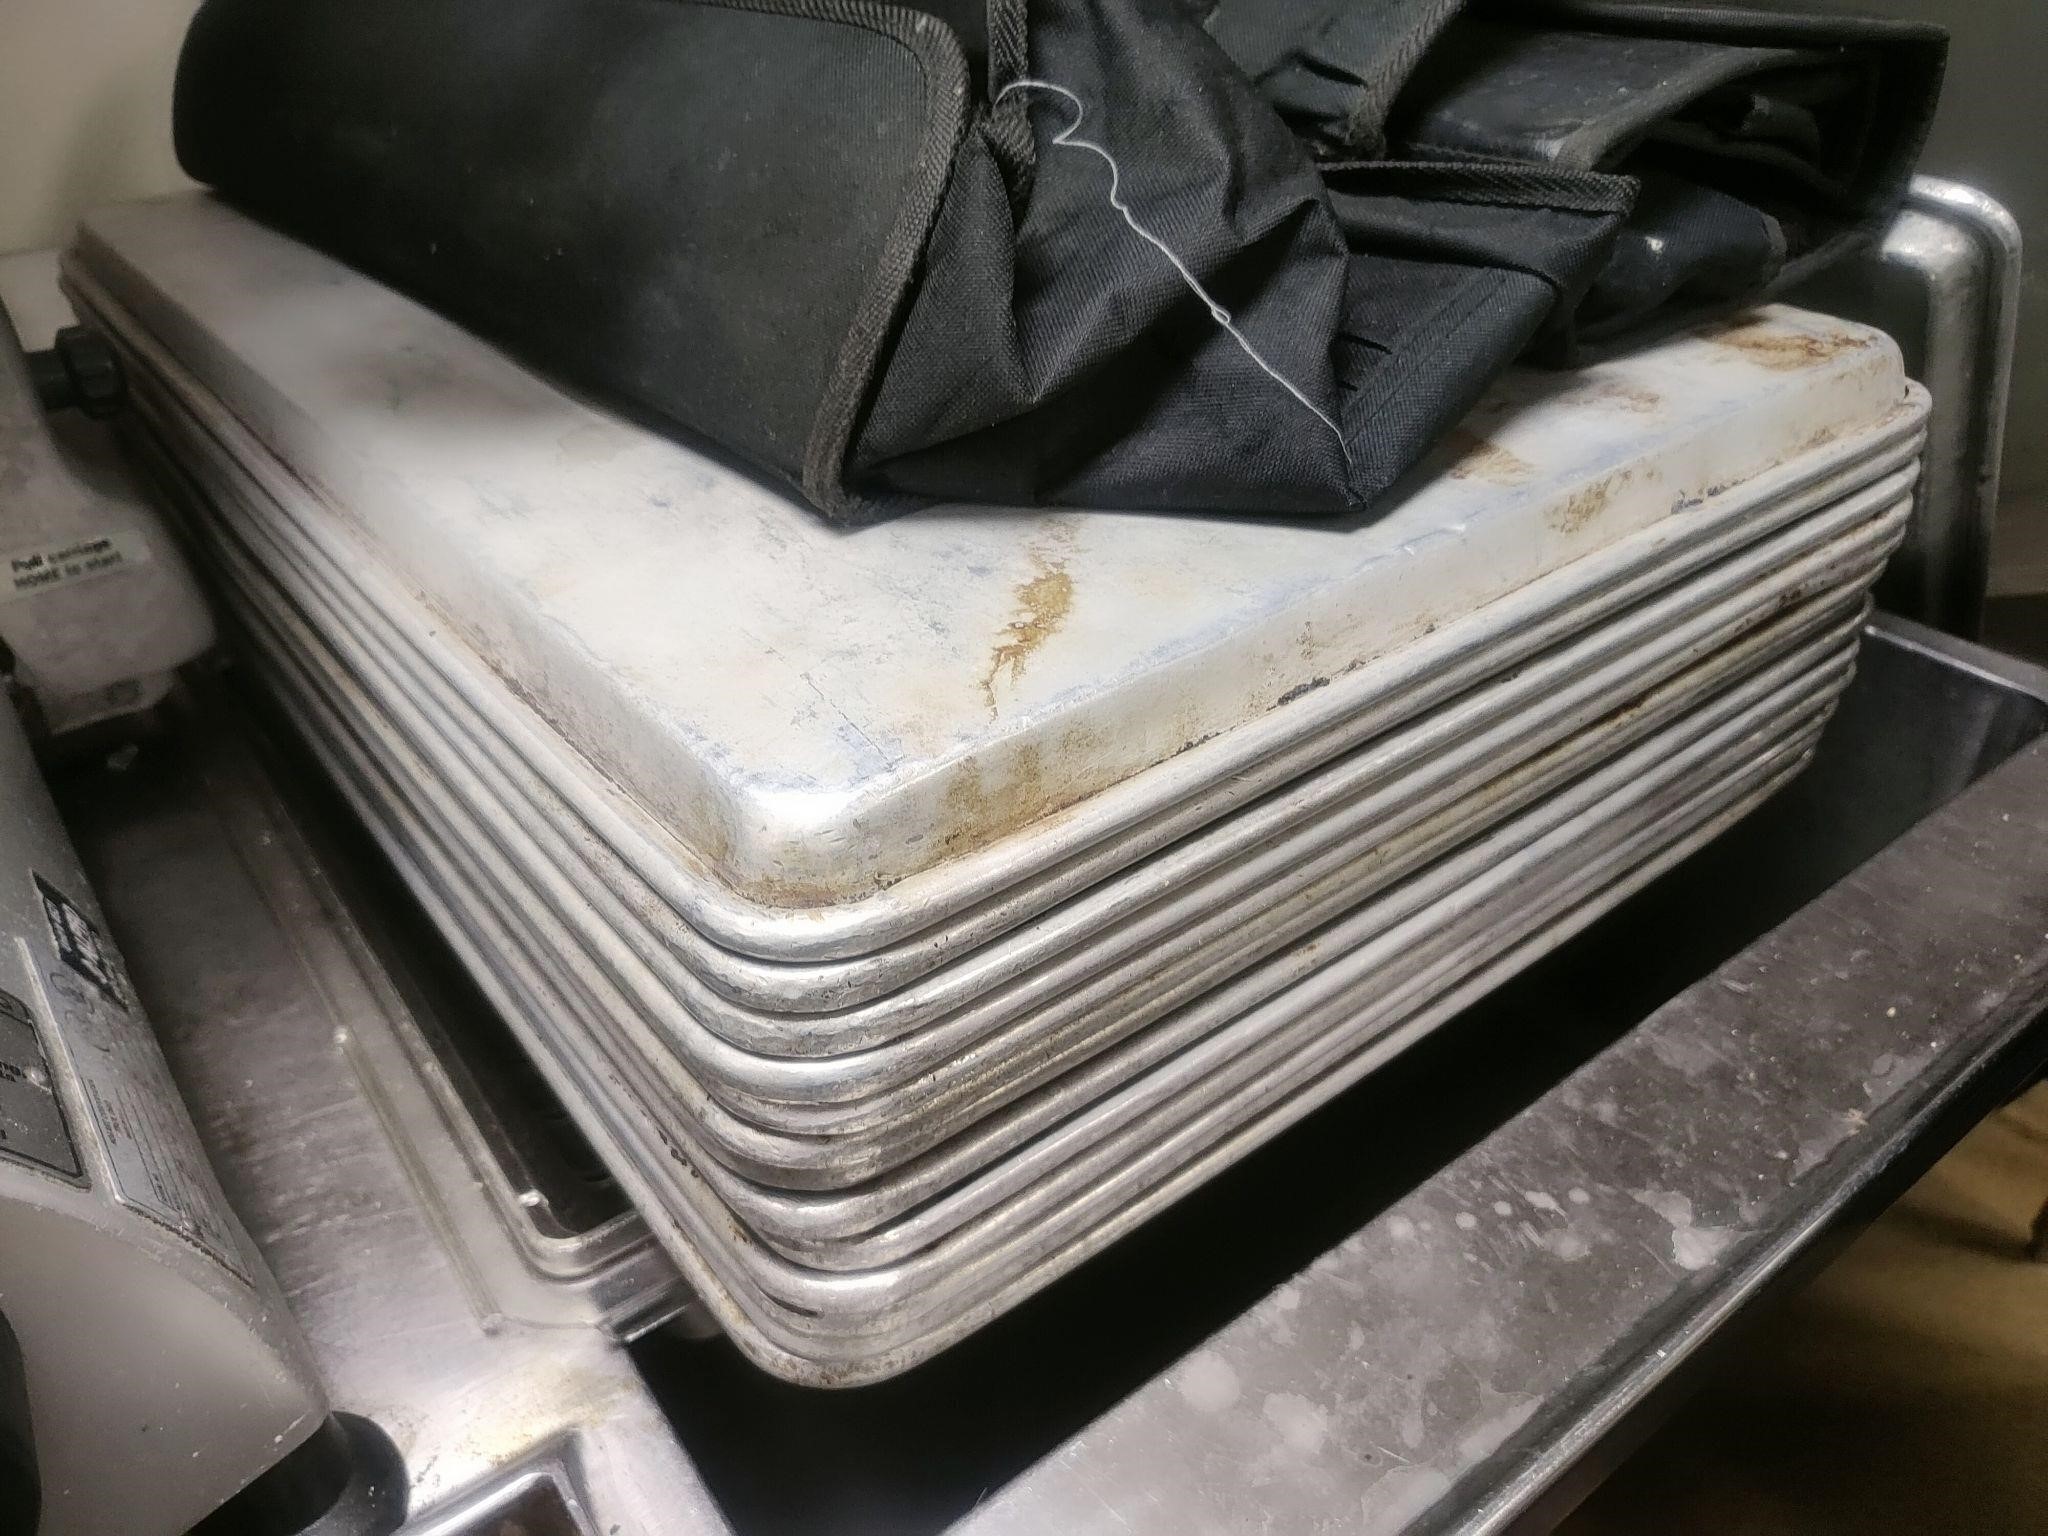 Full size sheet pans